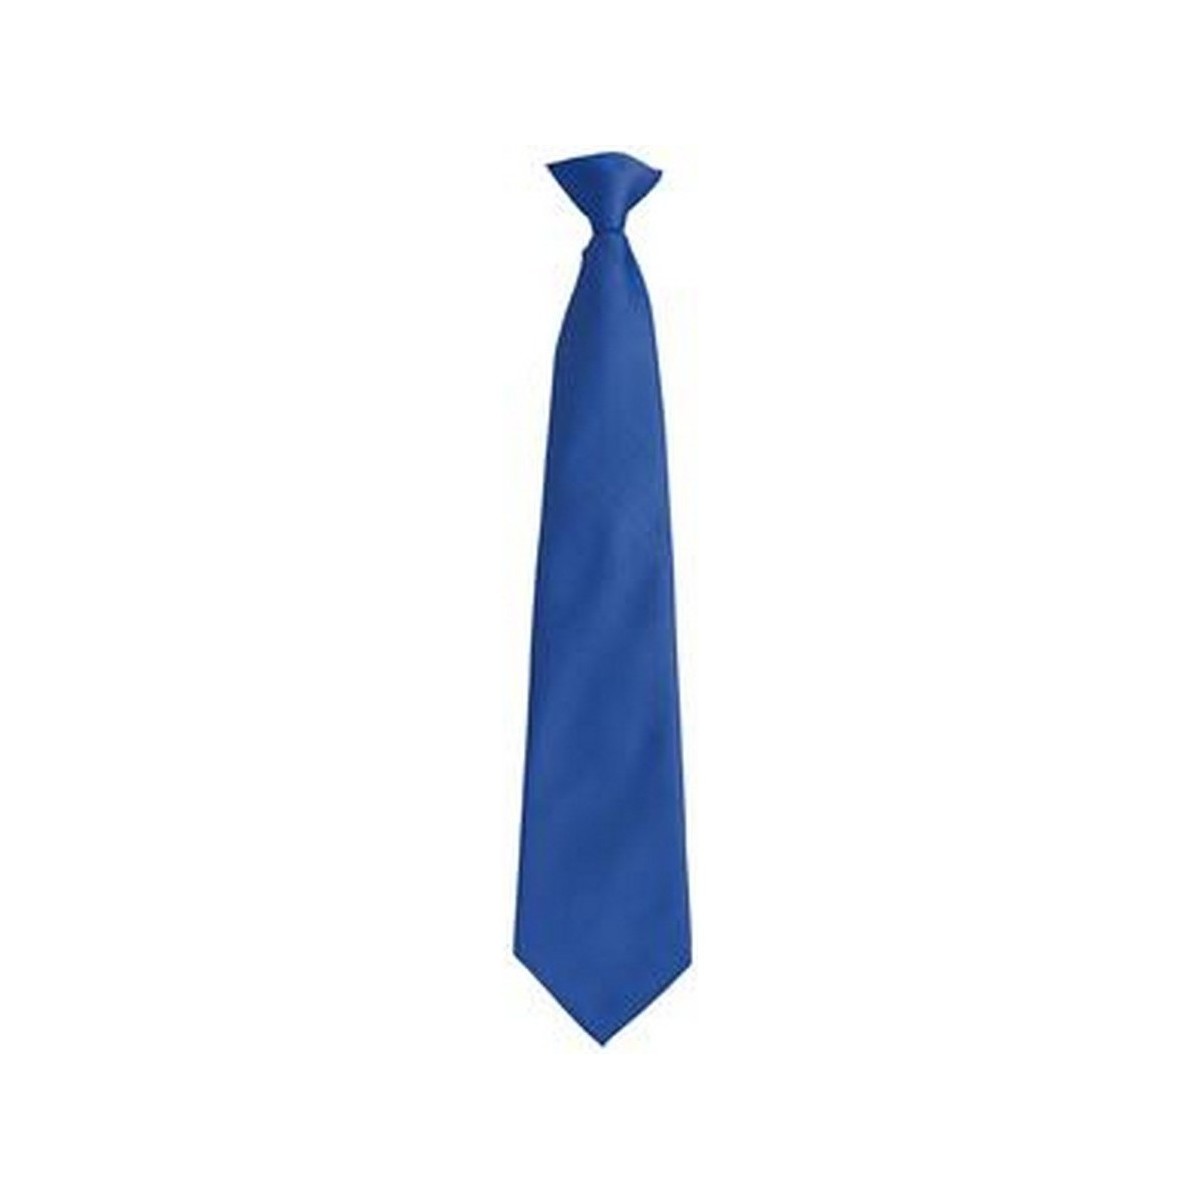 Abbigliamento Uomo Cravatte e accessori Premier PR785 Blu